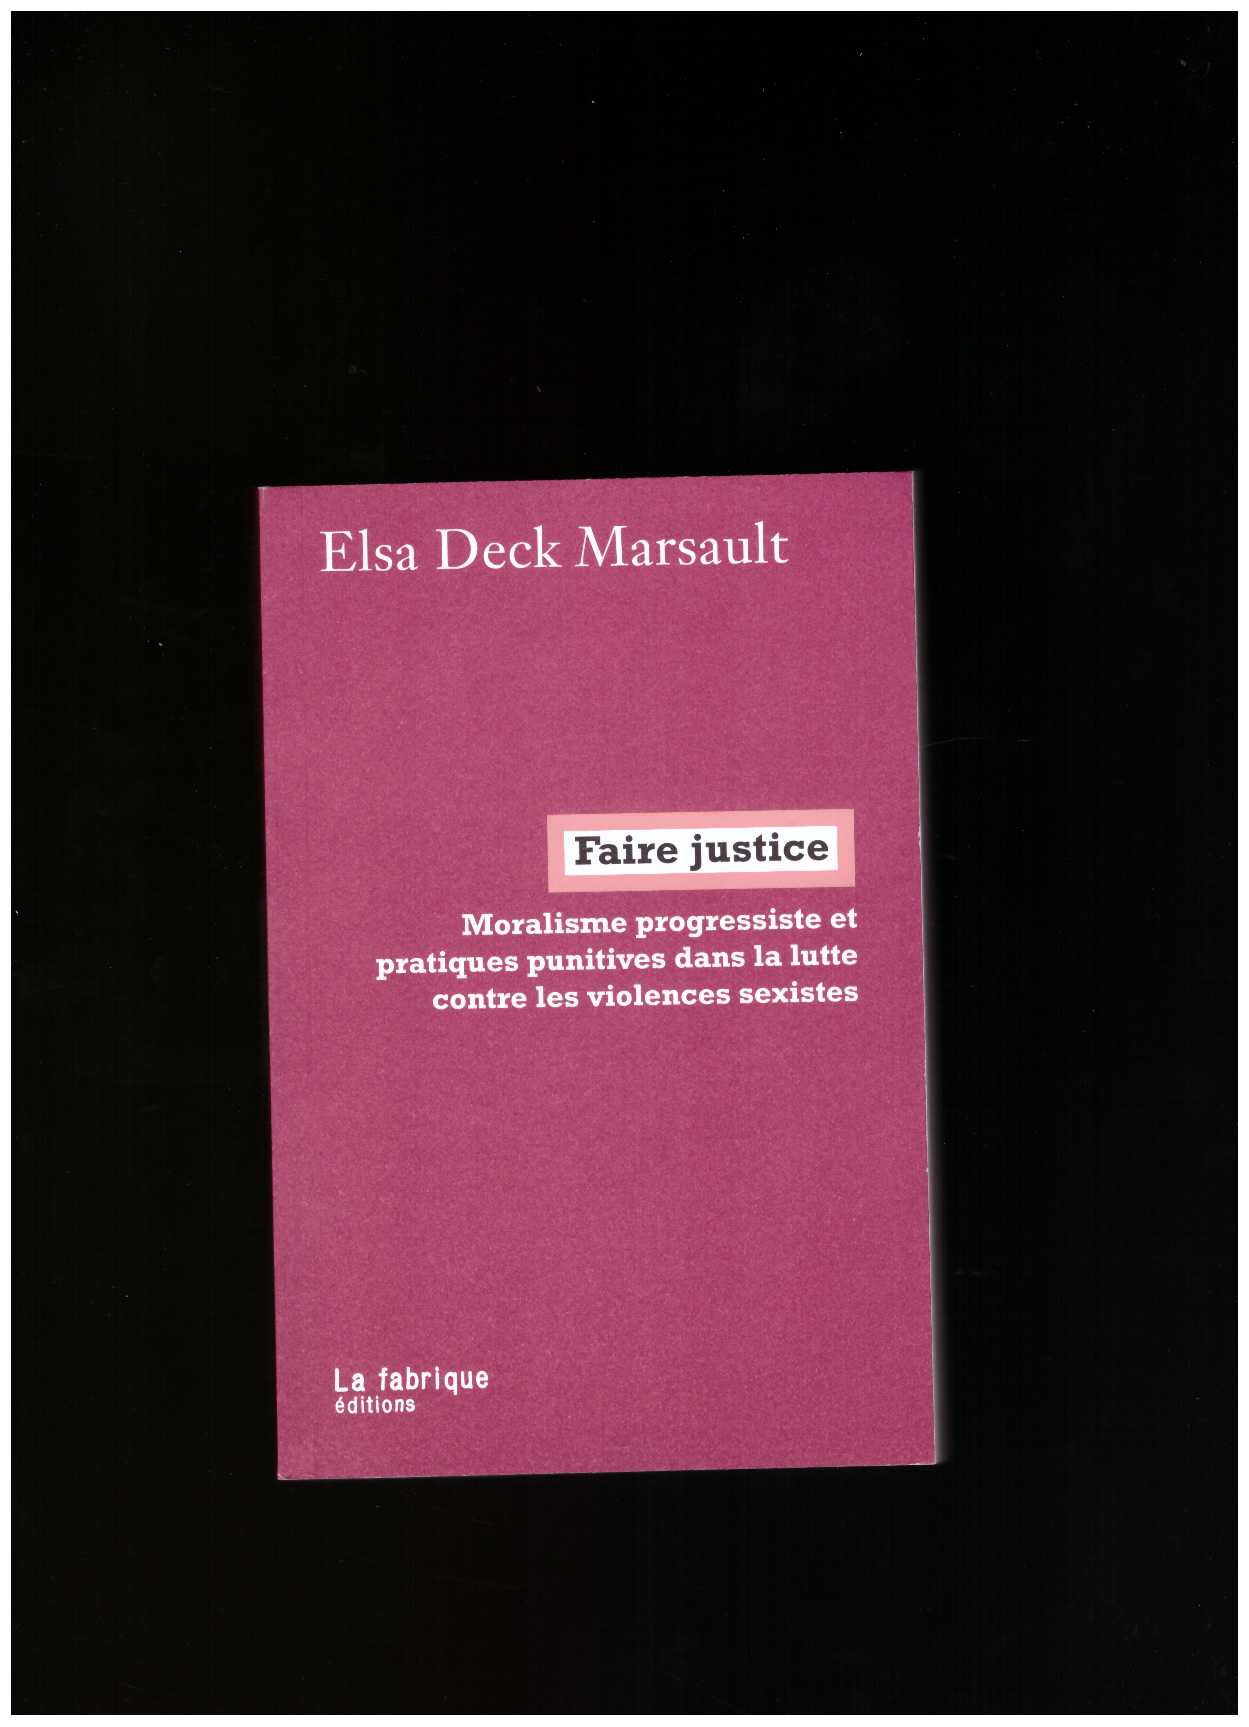 DECK MARSAULT, Elsa - Faire justice. Moralisme progressiste et pratiques punitives dans la lutte contre les violences sexistes